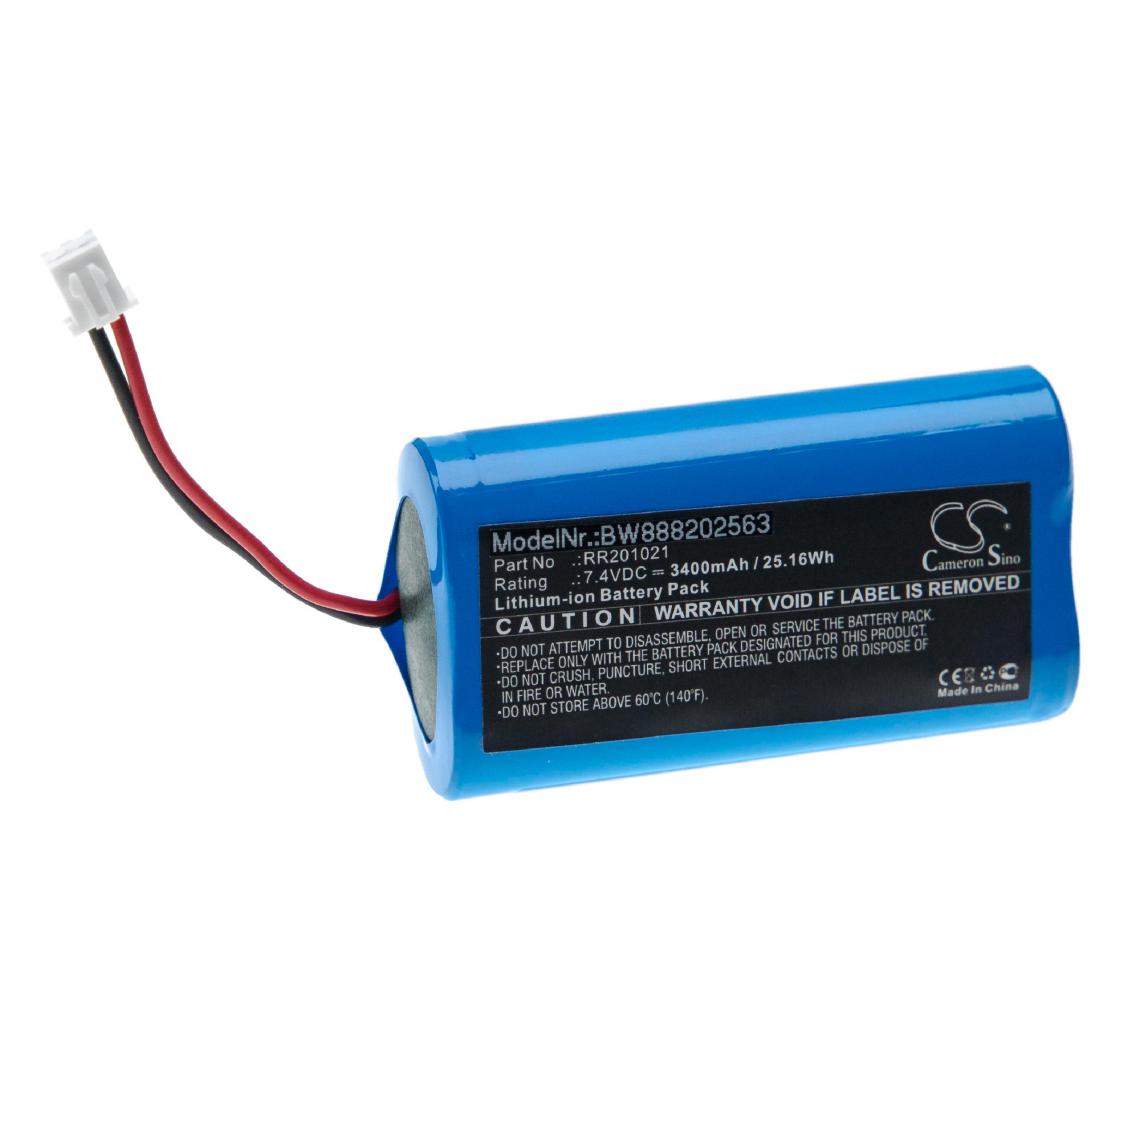 Vhbw - vhbw Batterie compatible avec Infralan Splicer HS 15C, HS 15O outil de mesure (3400mAh, 7,4V, Li-ion) - Piles rechargeables